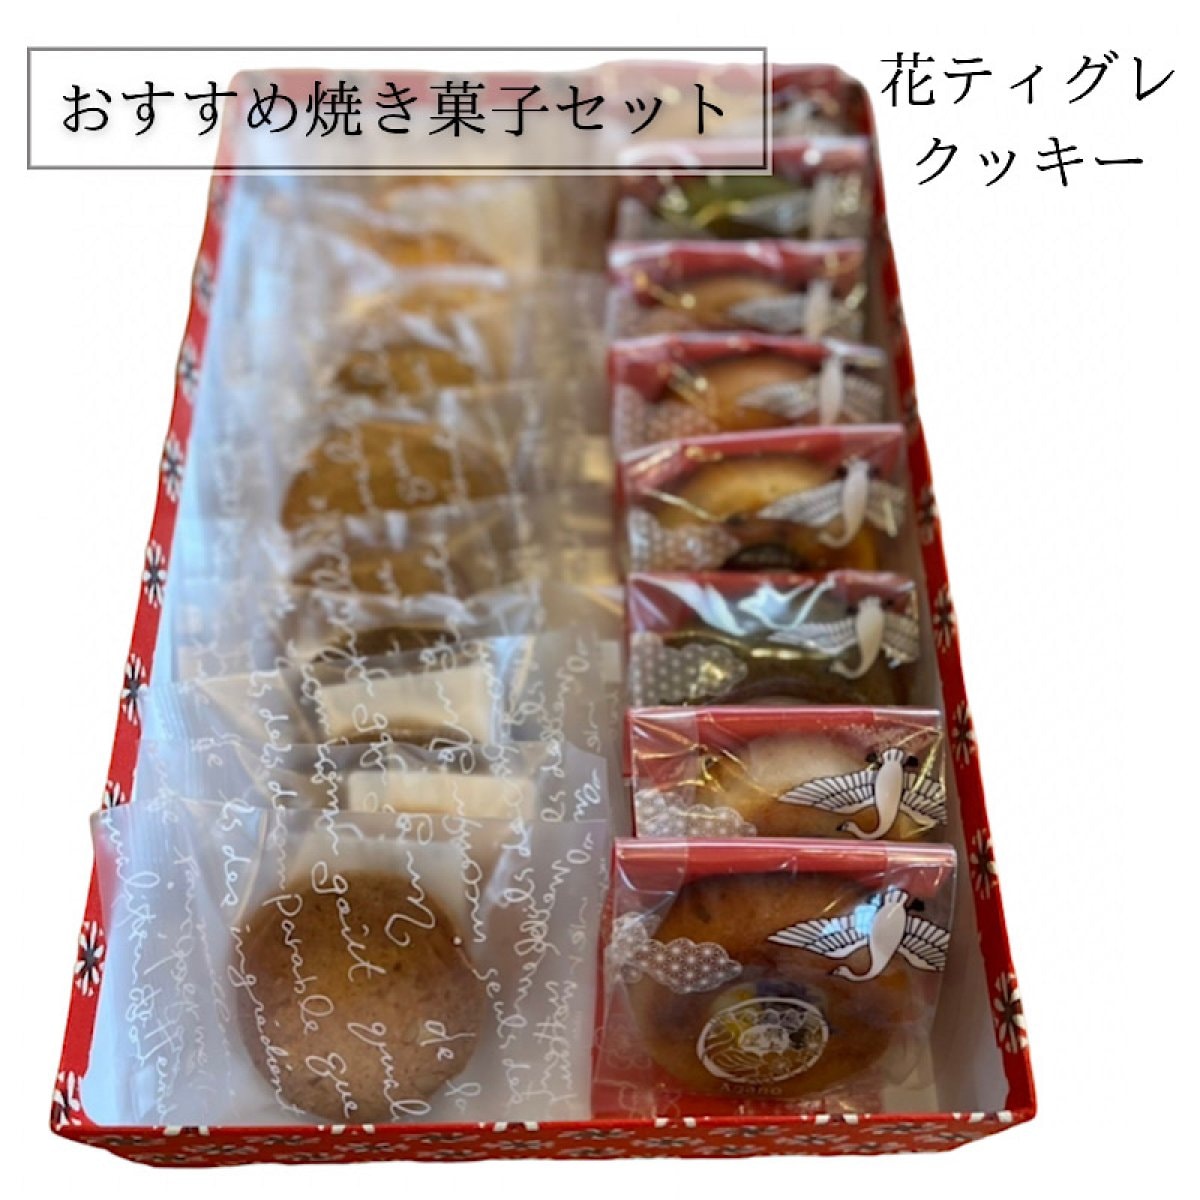 【高ポイント】おすすめ焼き菓子セット